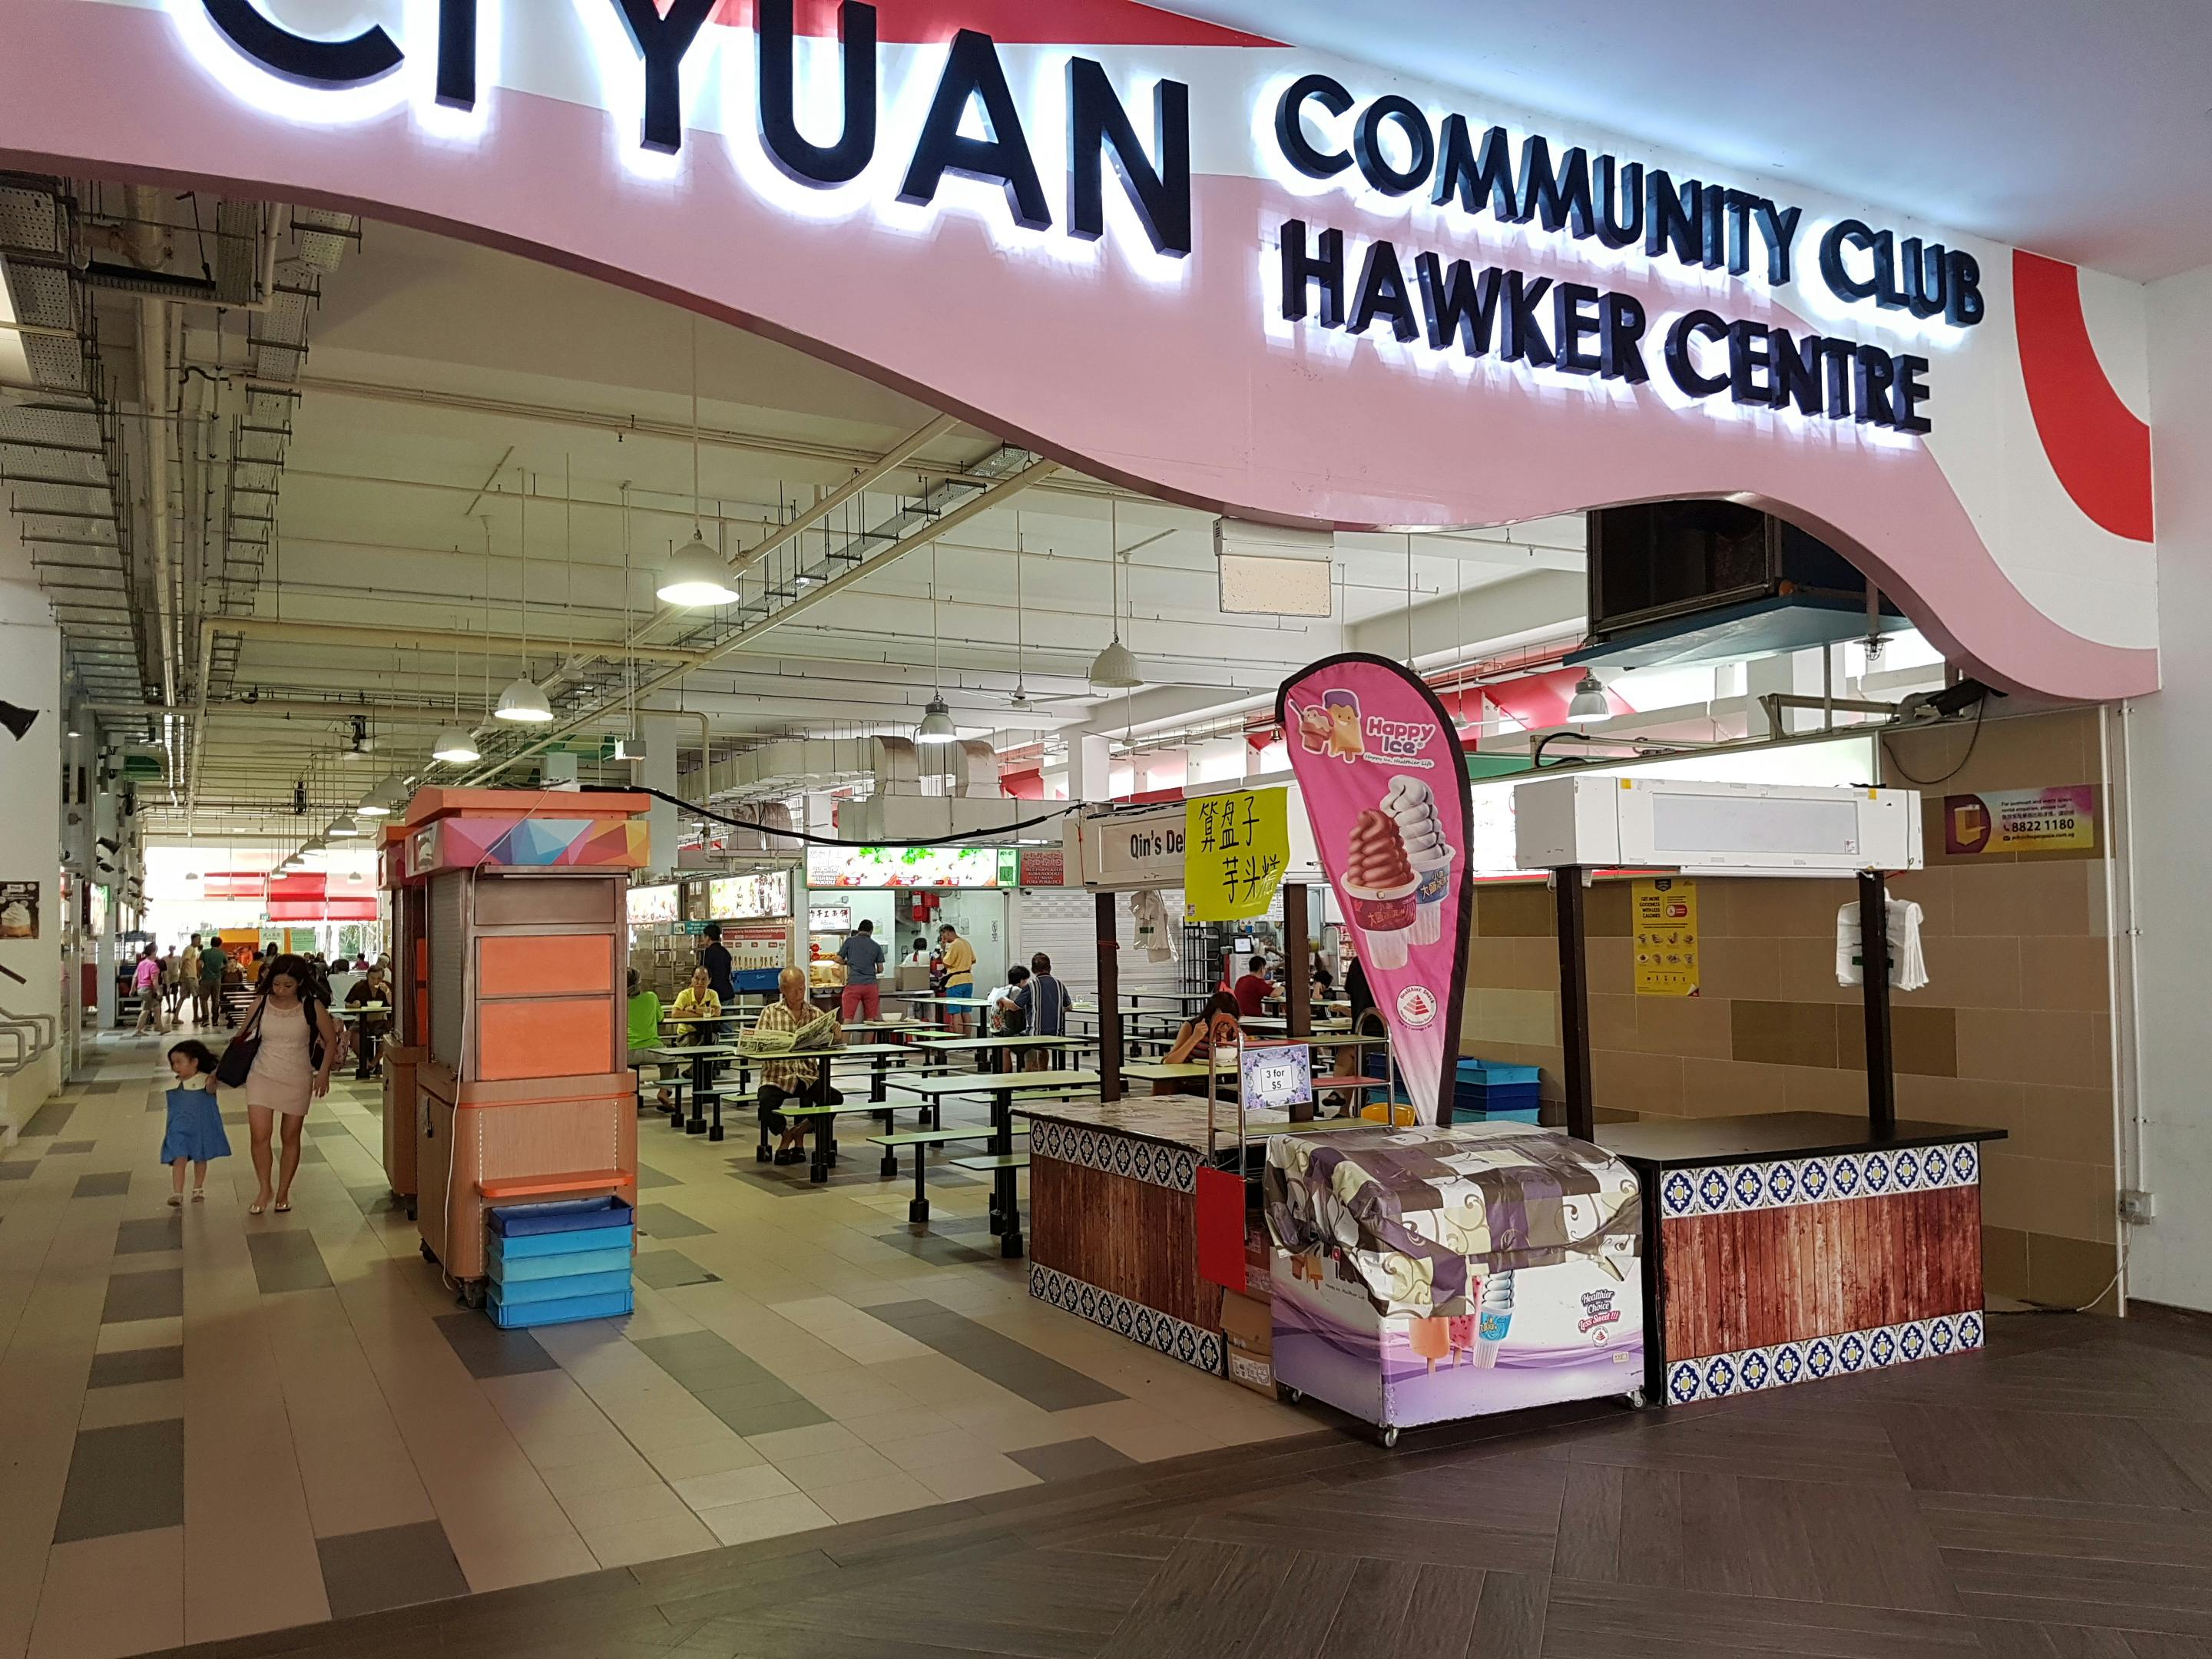 Ci Yuan Hawker Centre